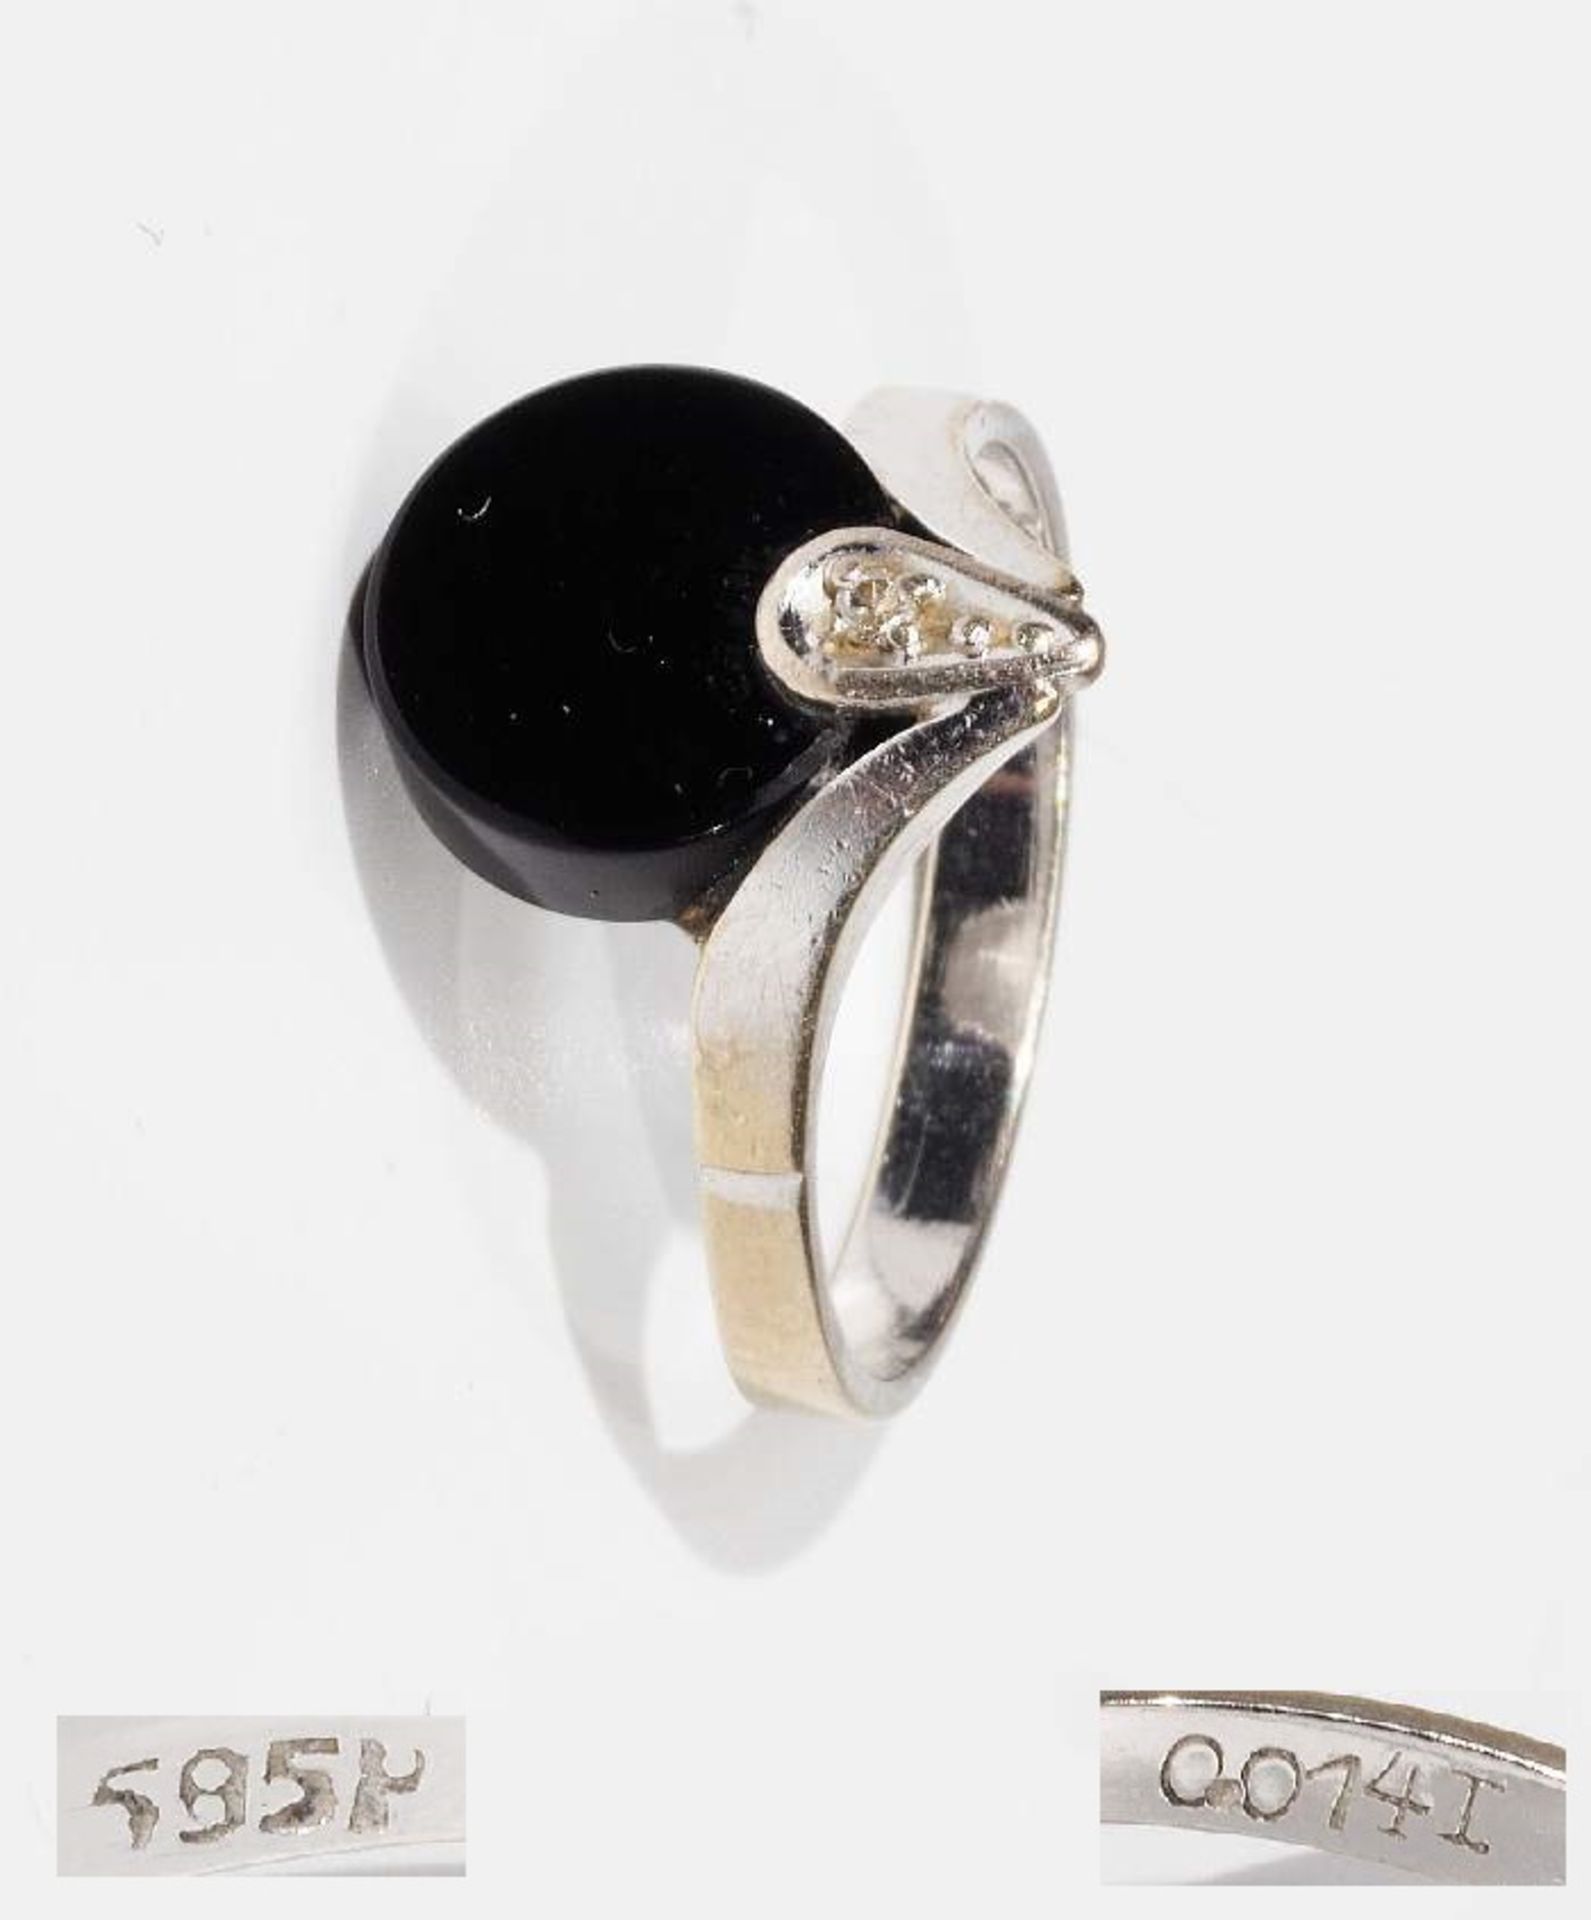 Ring mit Onyx ud Brillantbesatz, in der Schiene graviert 0,01 ct., 585er Weißgold. Ringgröße 55,